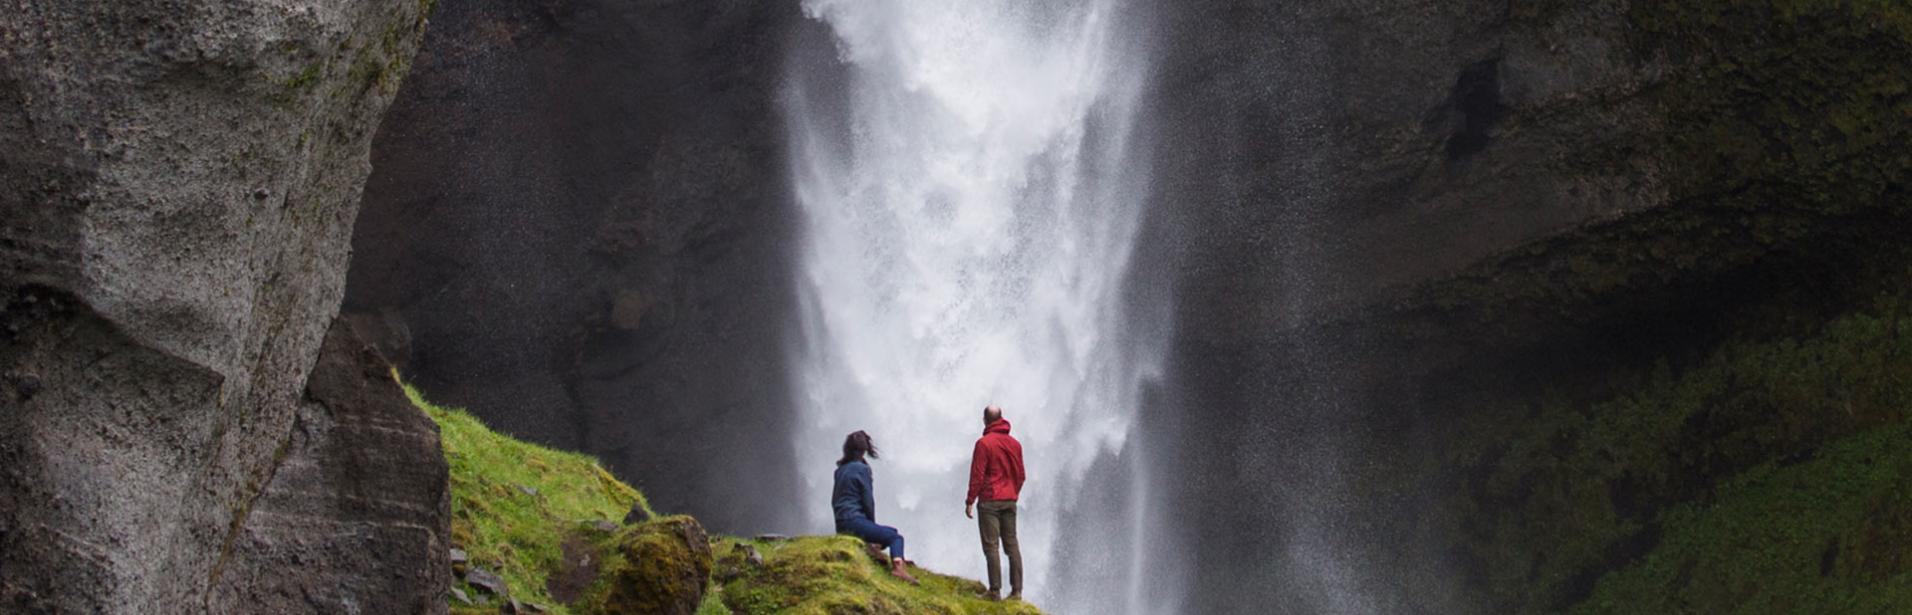 Par besøger vandfald på det sydlige Island